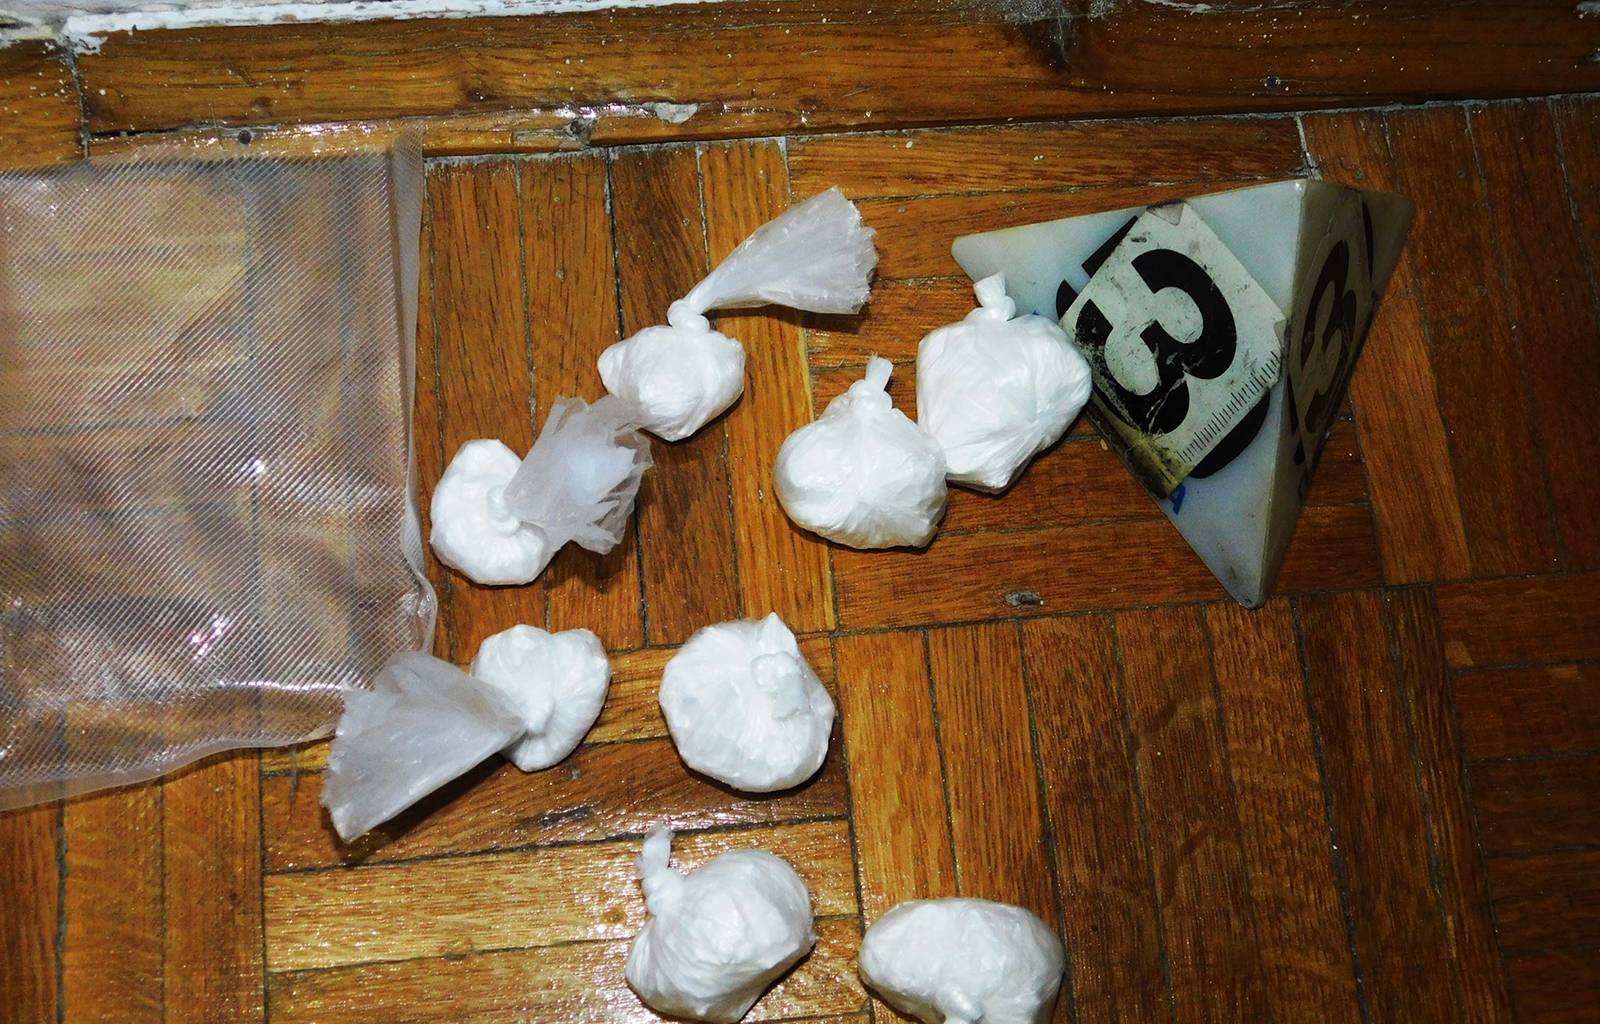  Pronađeni kokain i municija u stanu, uhapšeni osumnjičeni